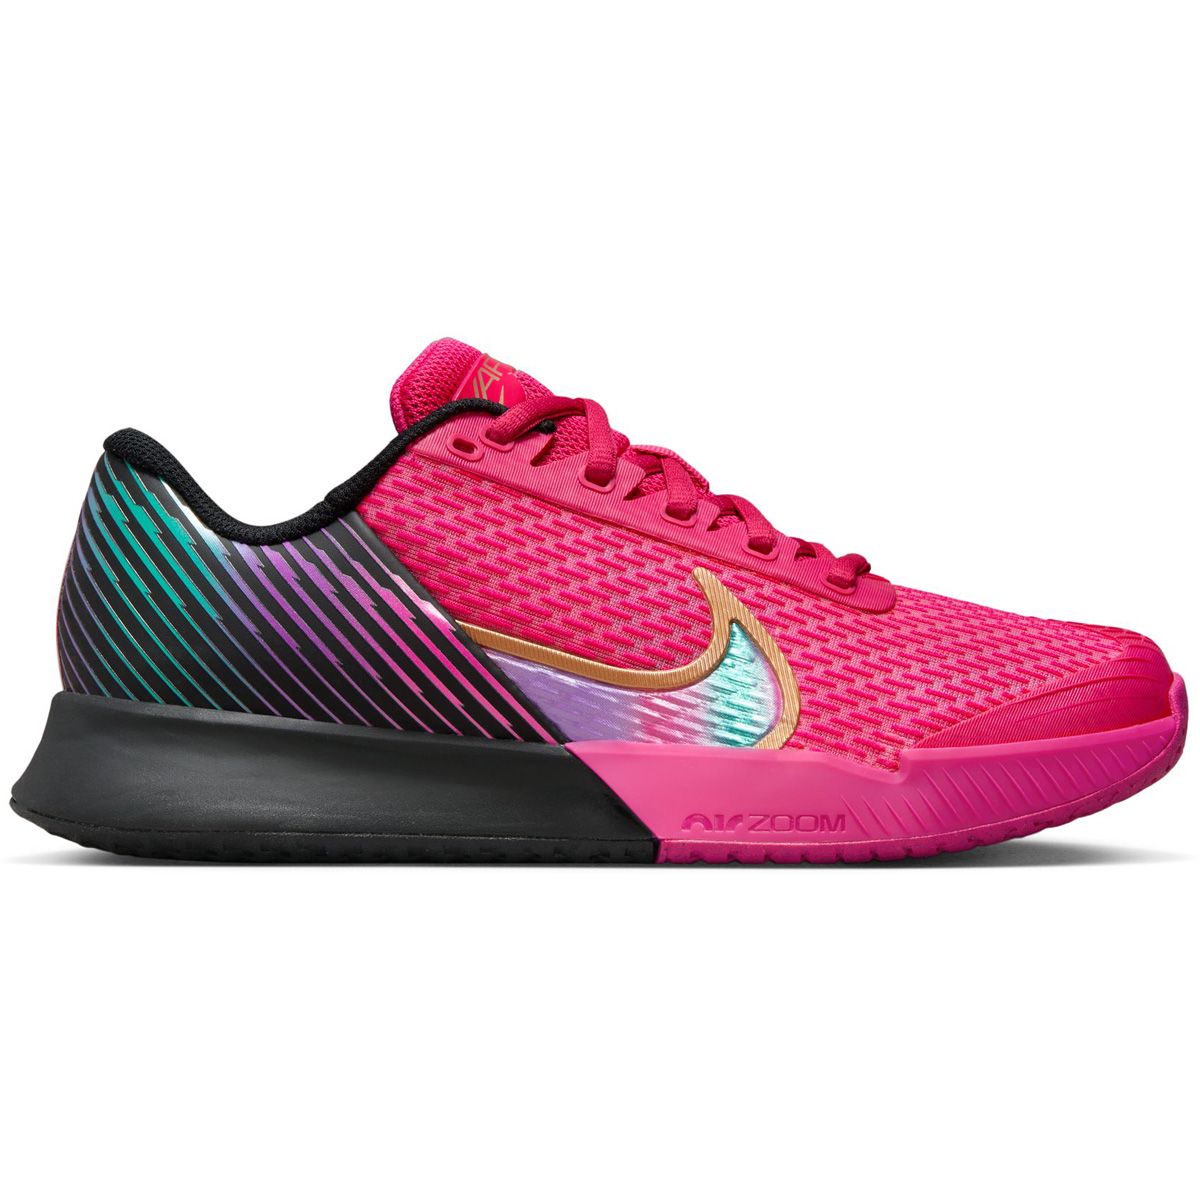 NikeCourt Air Zoom Vapor Pro 2 Premium Women's Tennis Shoes